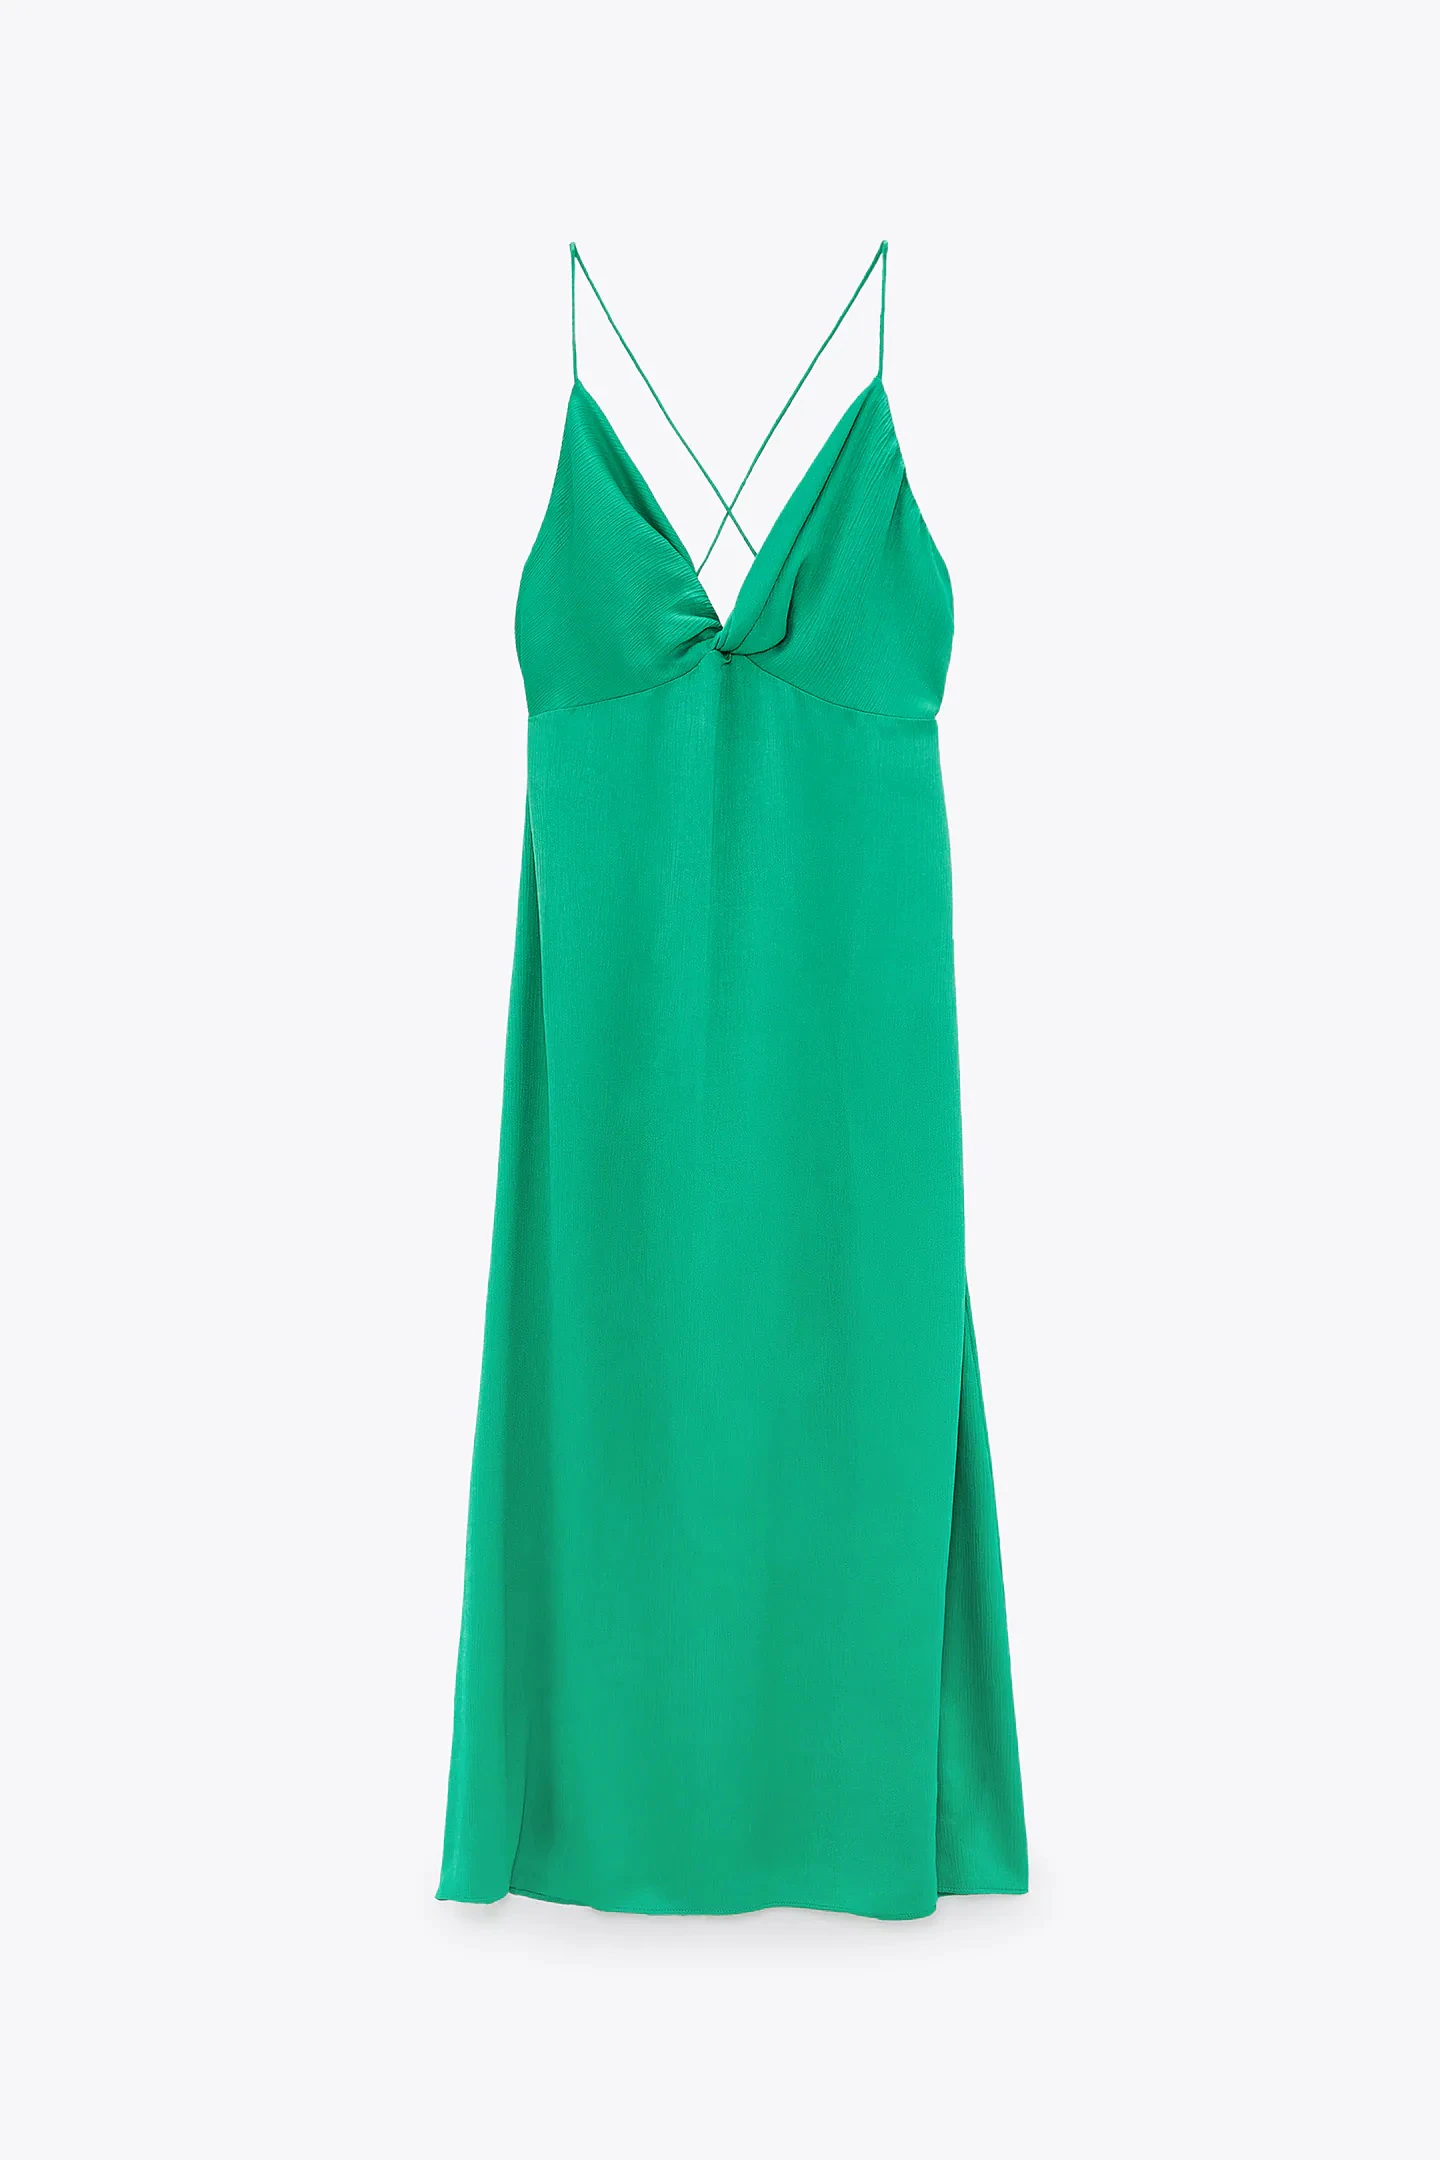 Fotos: Verde que te quiero verde: 15 vestidos de Zara con el color tendencia que y que adelanta el verano | Mujer Hoy